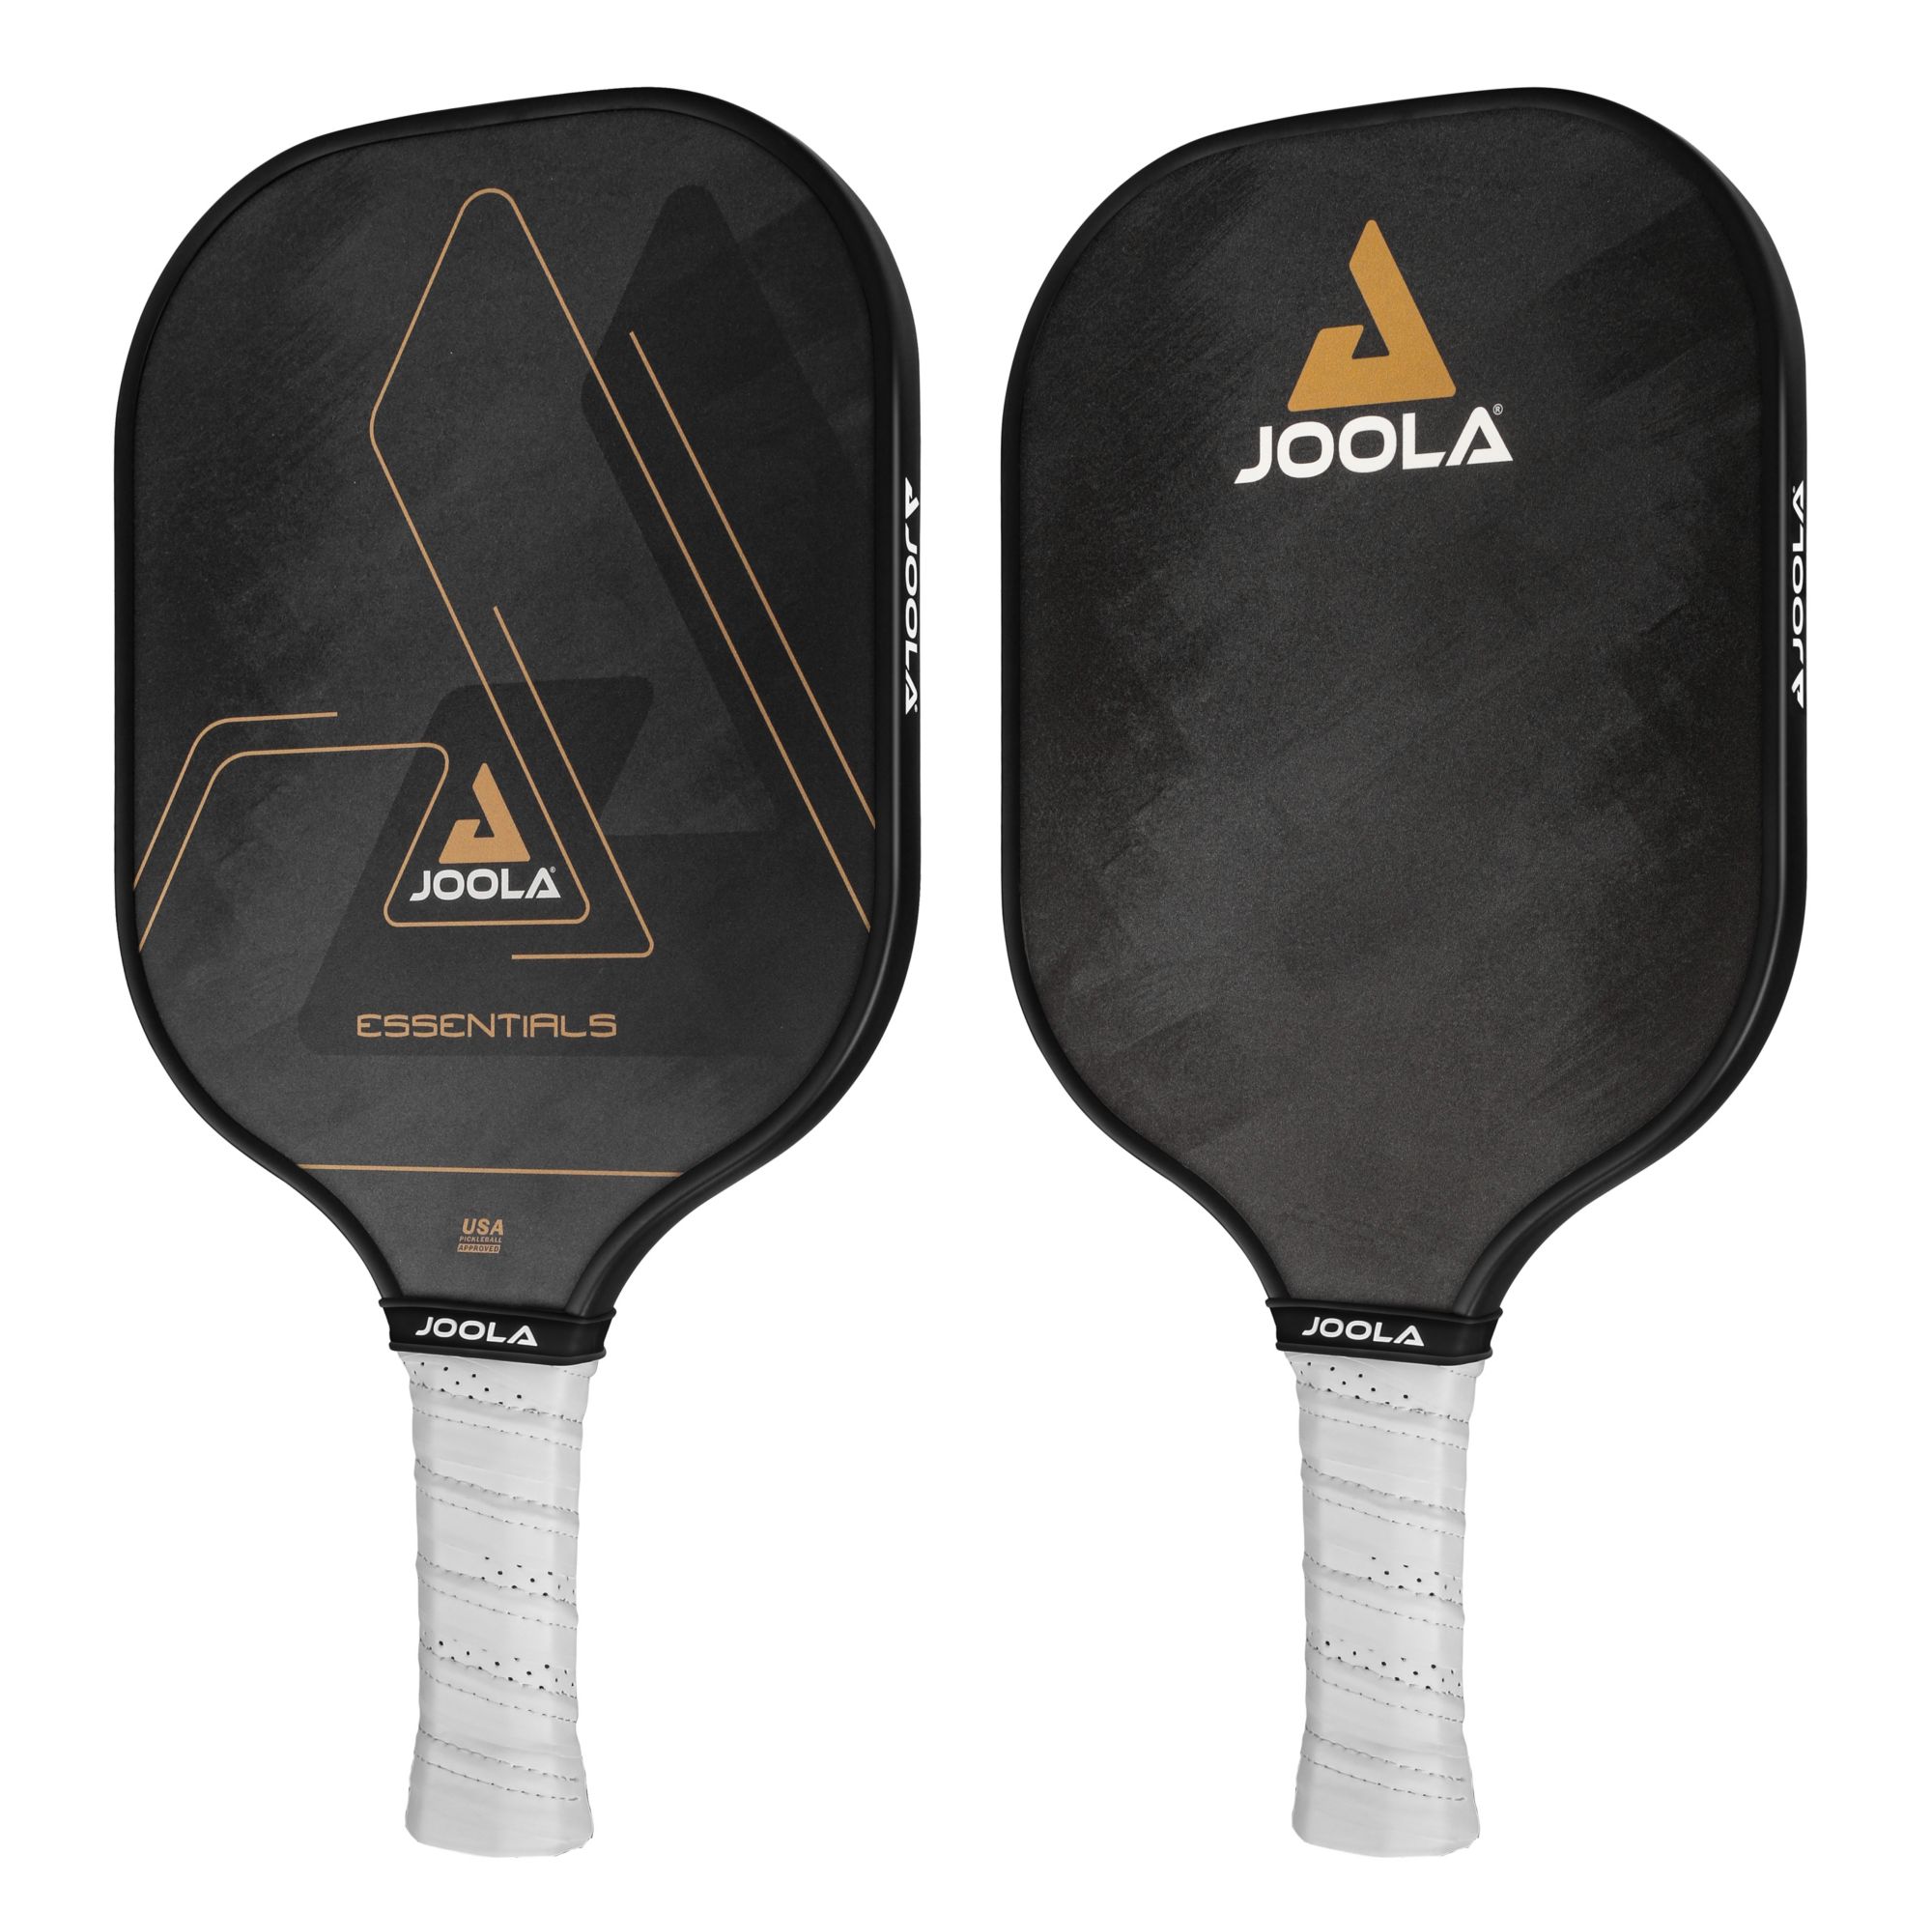 JOOLA Essentials Performance Pickleball Paddle